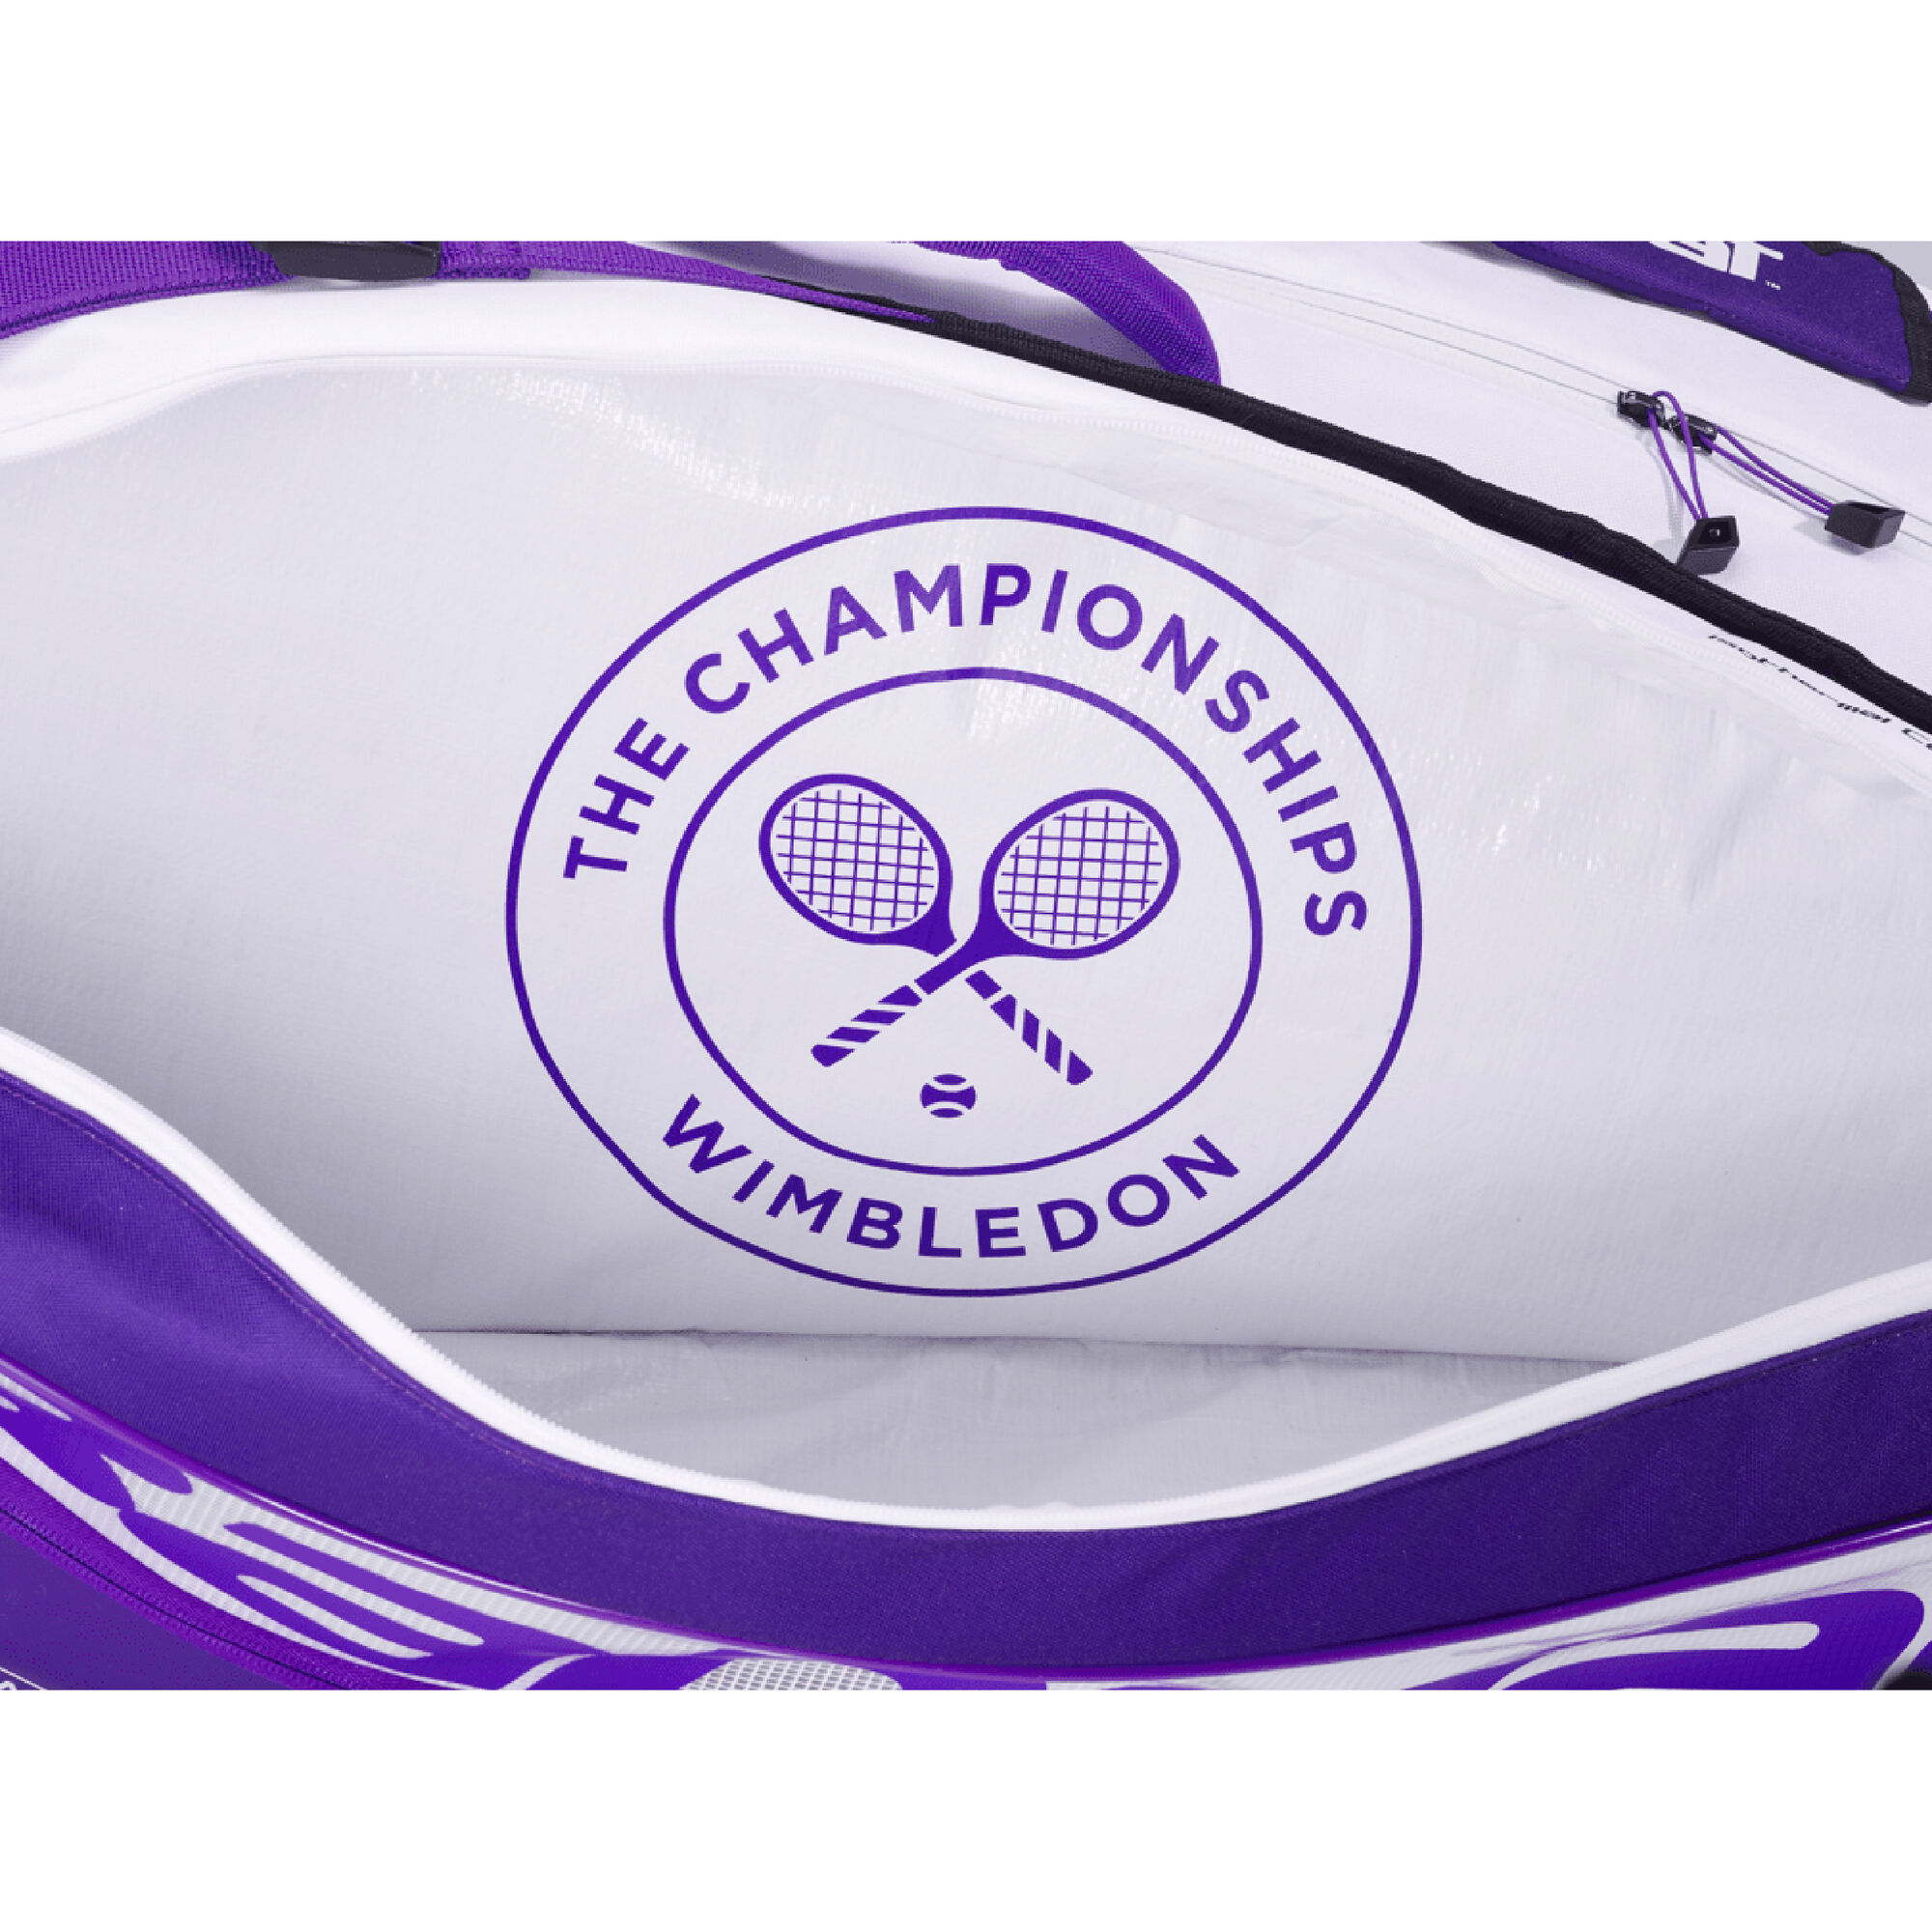 Wimbledon racket bag